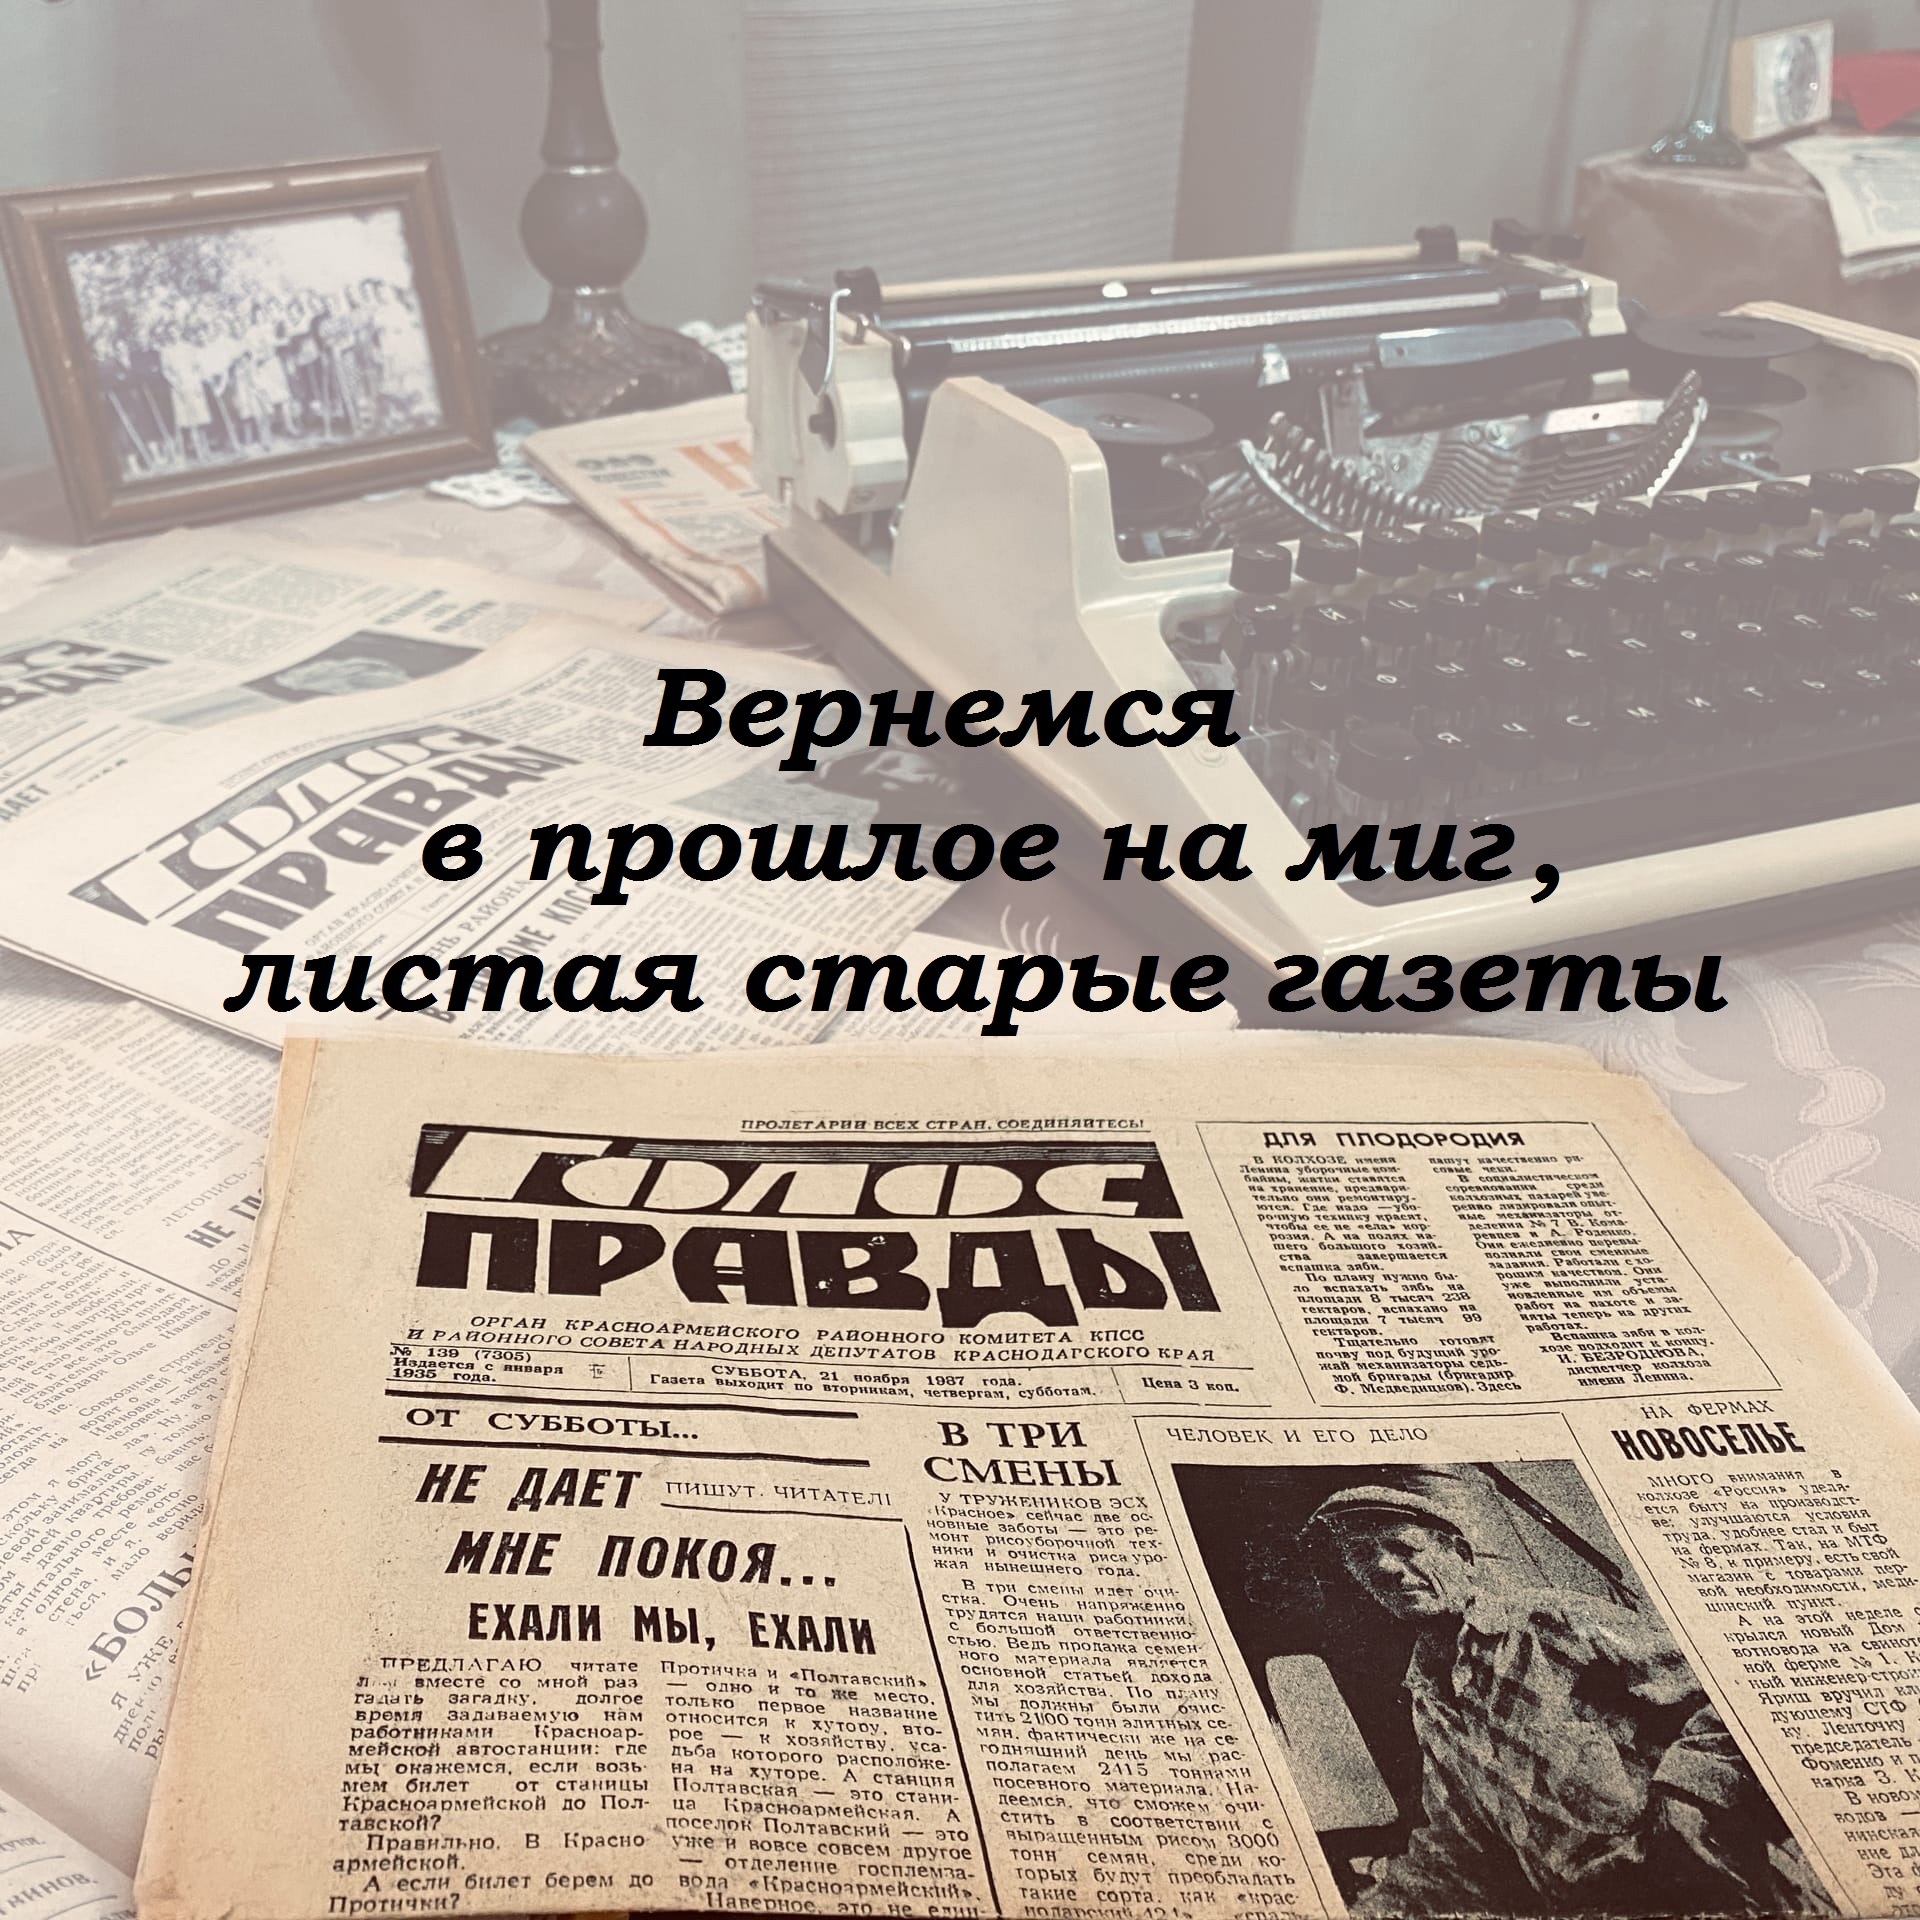 Проект «Вернемся в прошлое на миг, листая старые газеты»